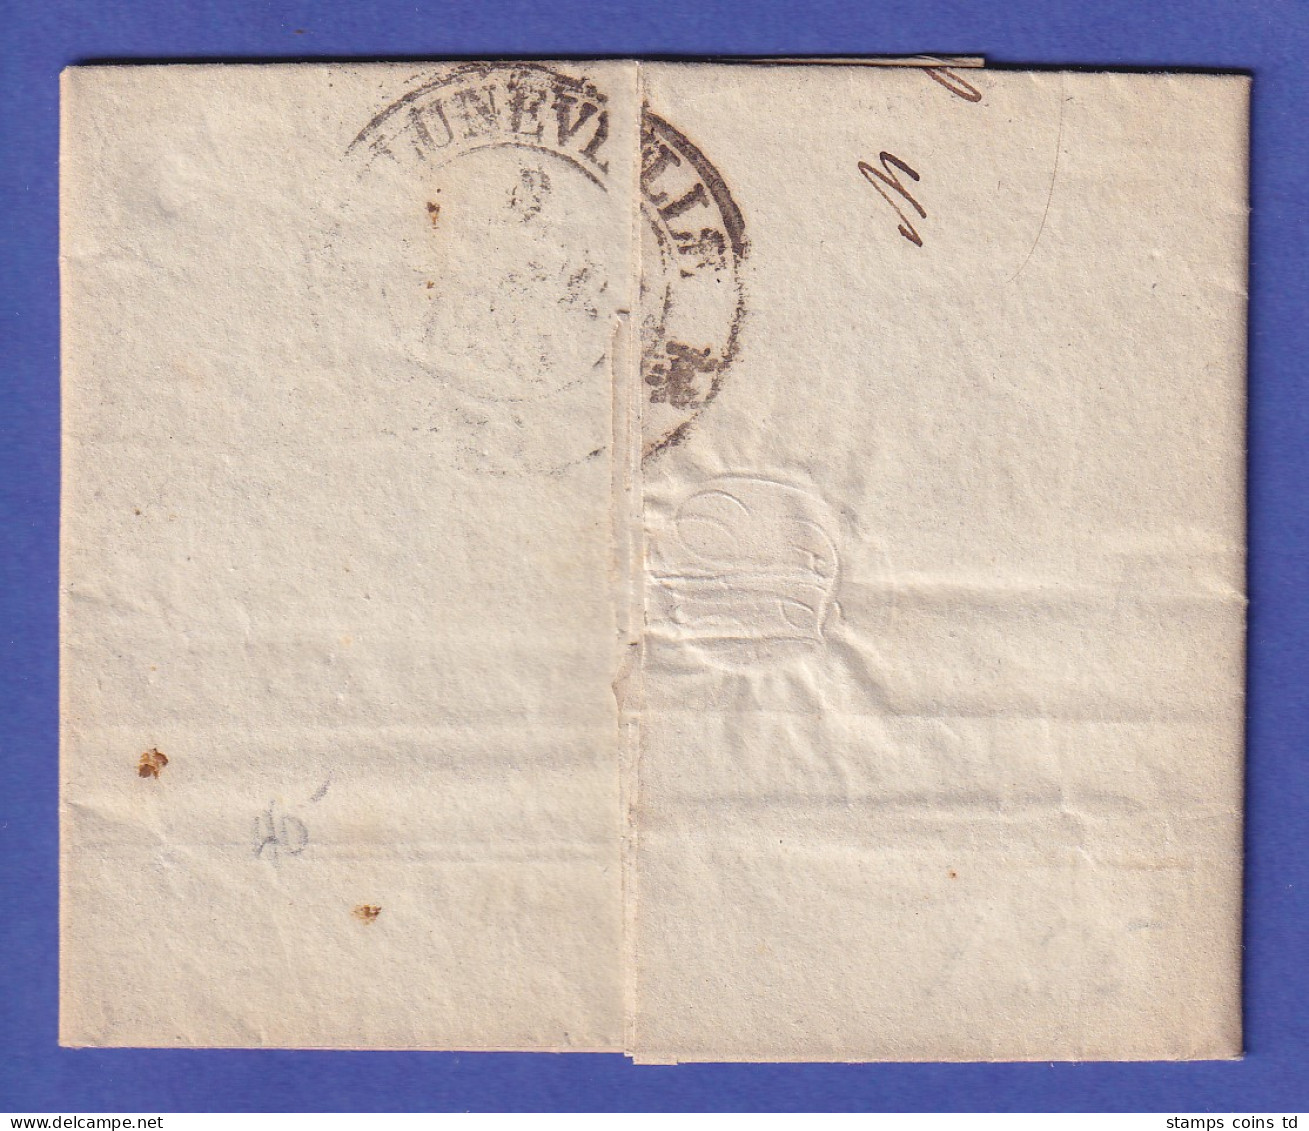 Schweiz Vorphila-Brief Mit Einzeiler CHAUX DE FONDS Und Beförderungs-O 1835 - Sonstige - Europa